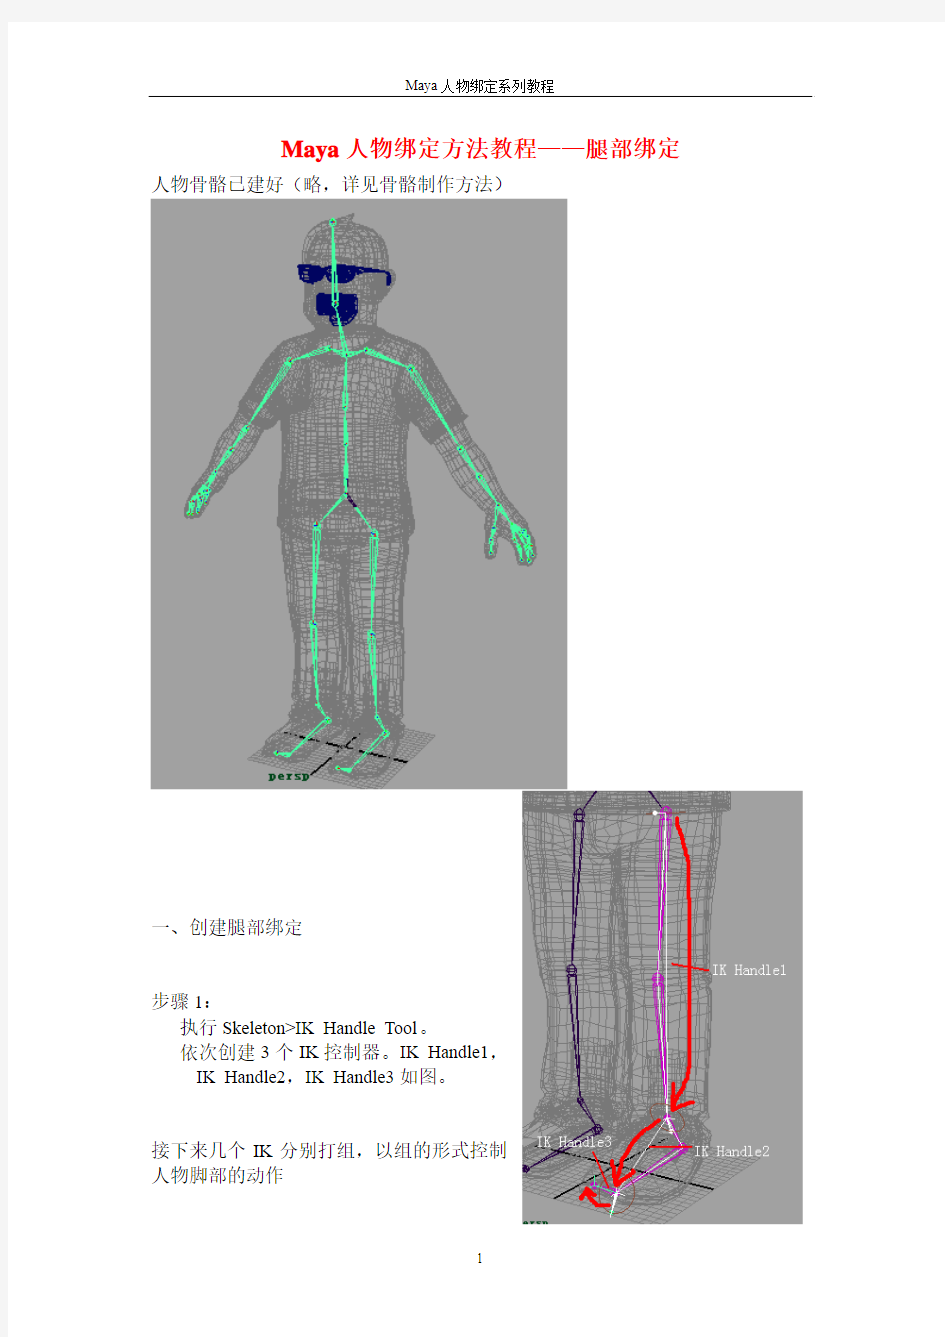 Maya人物绑定方法教程——腿部绑定